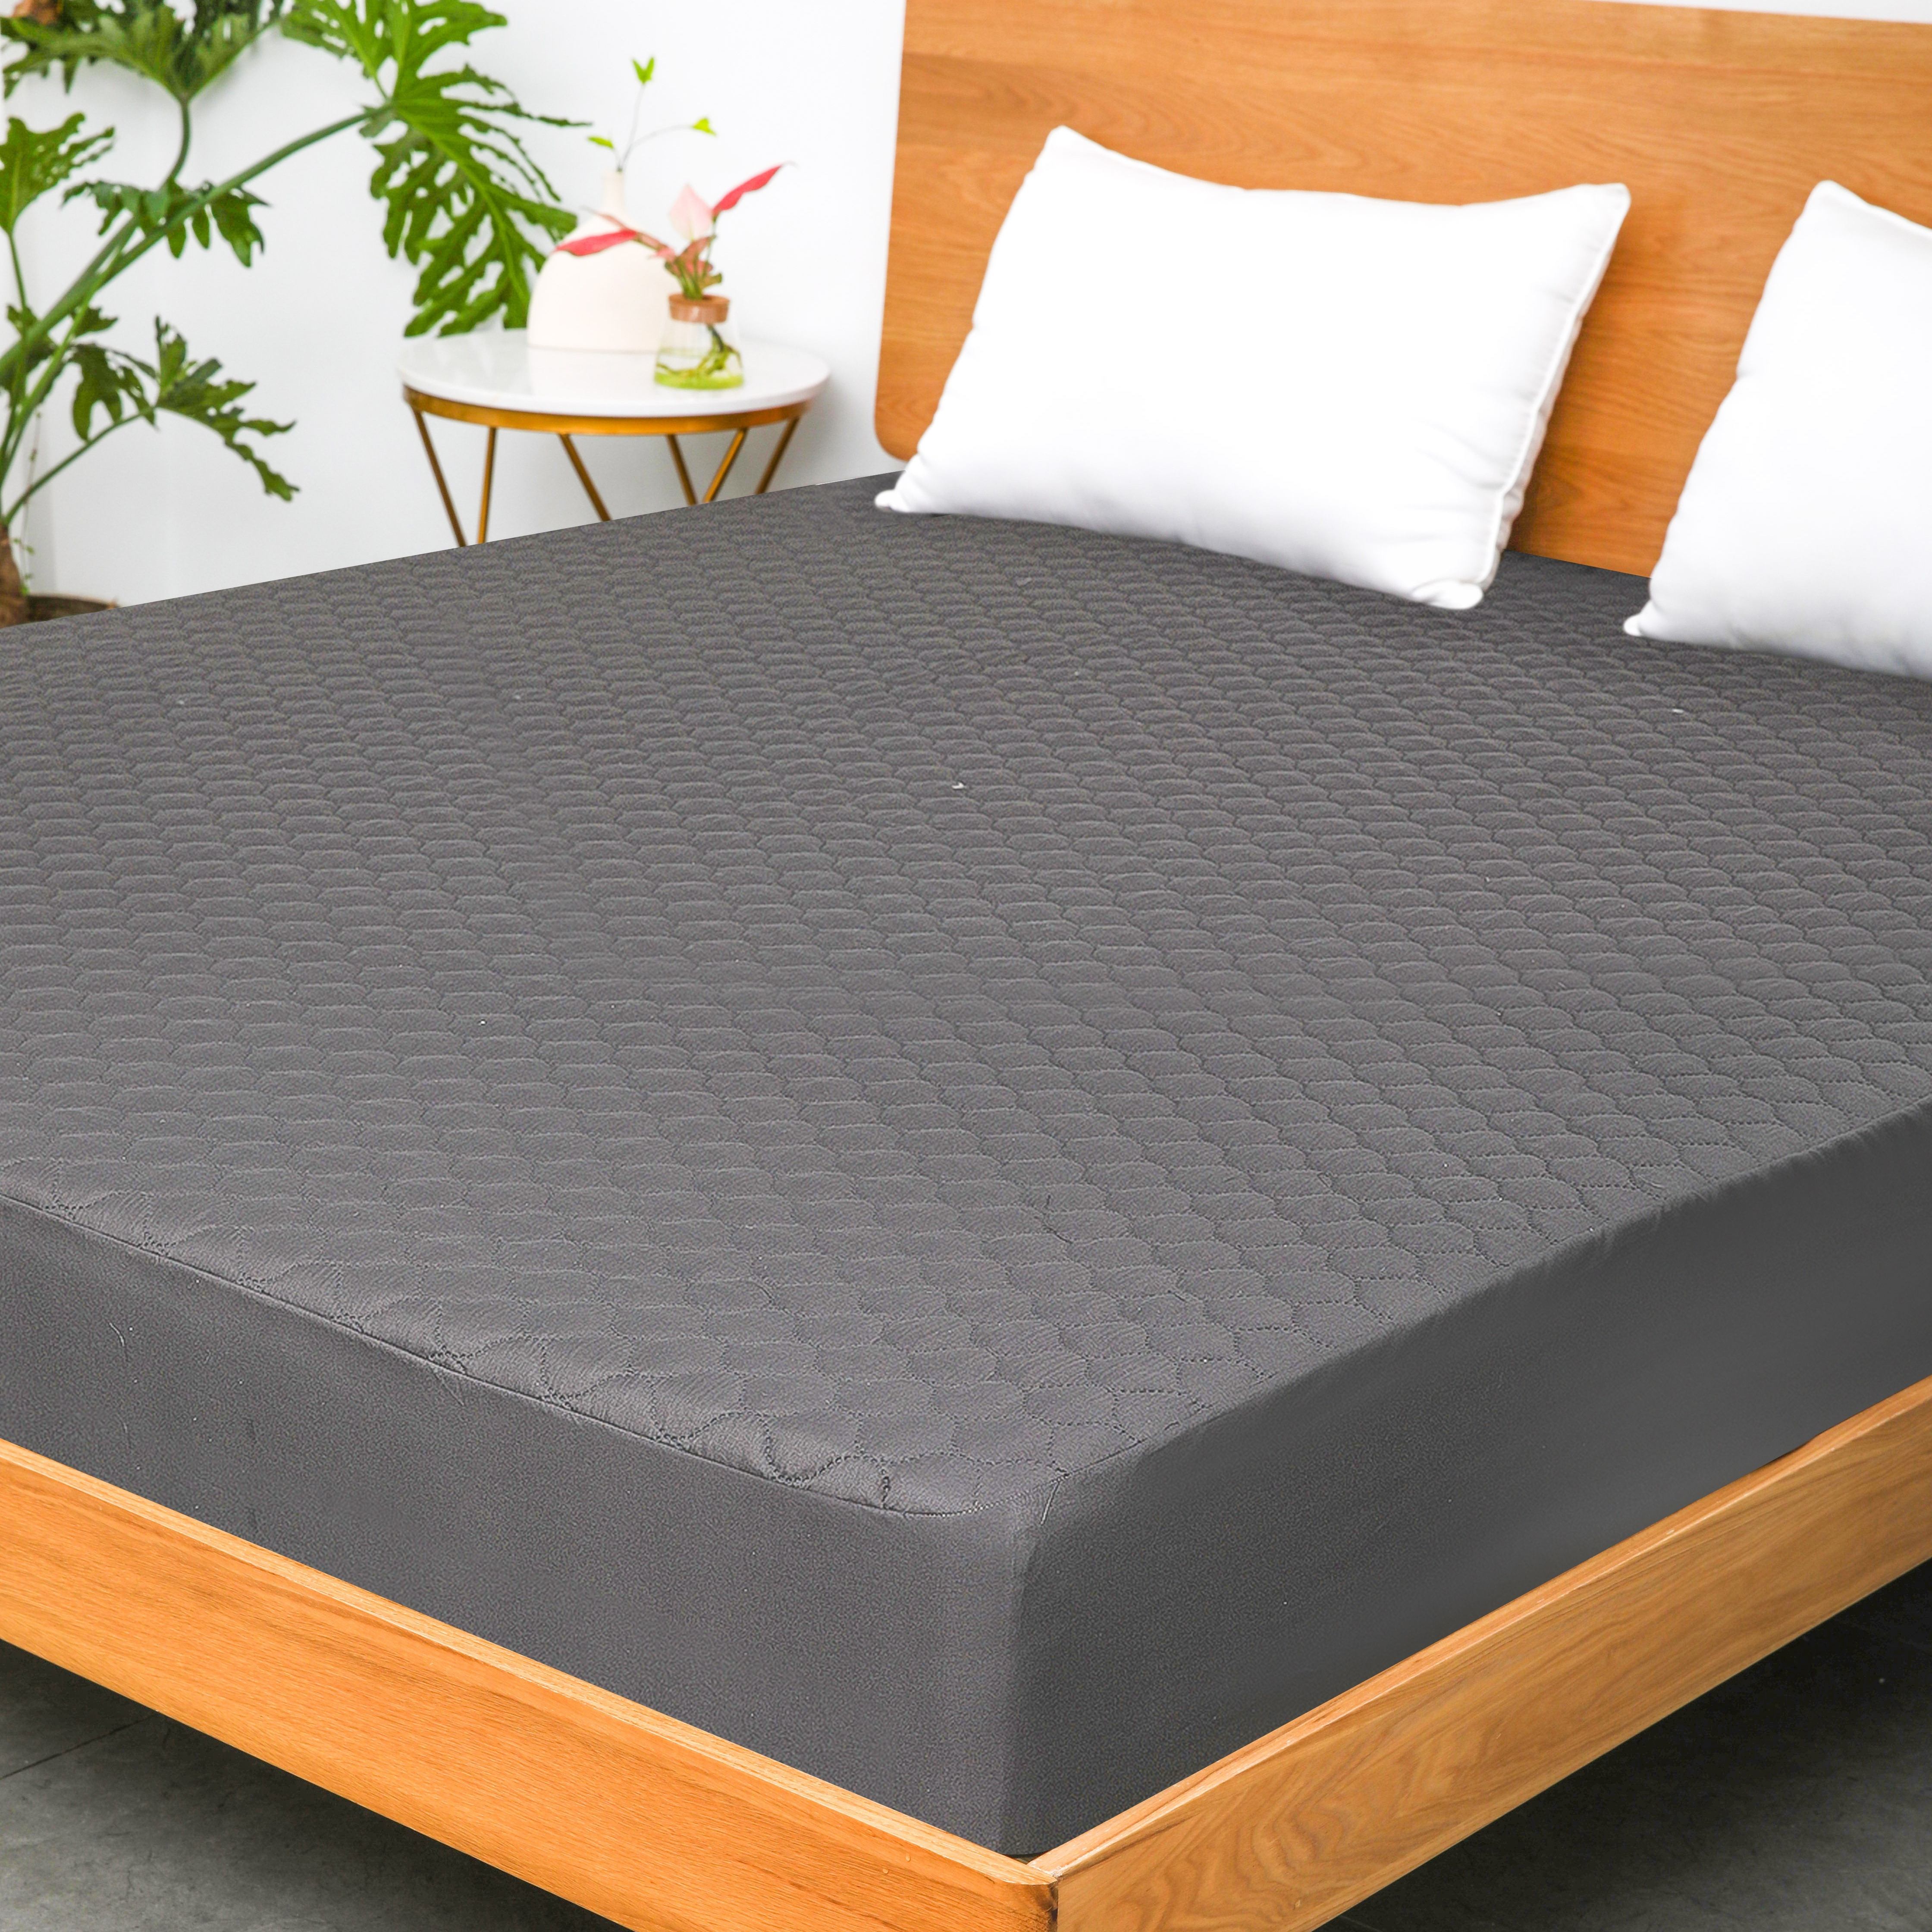 Protector de colchón impermeable – Cubrecolchón transpirable, protección de  colchón sin agrietamiento, protector de colchón acolchado, 180 x 200 + 9.8